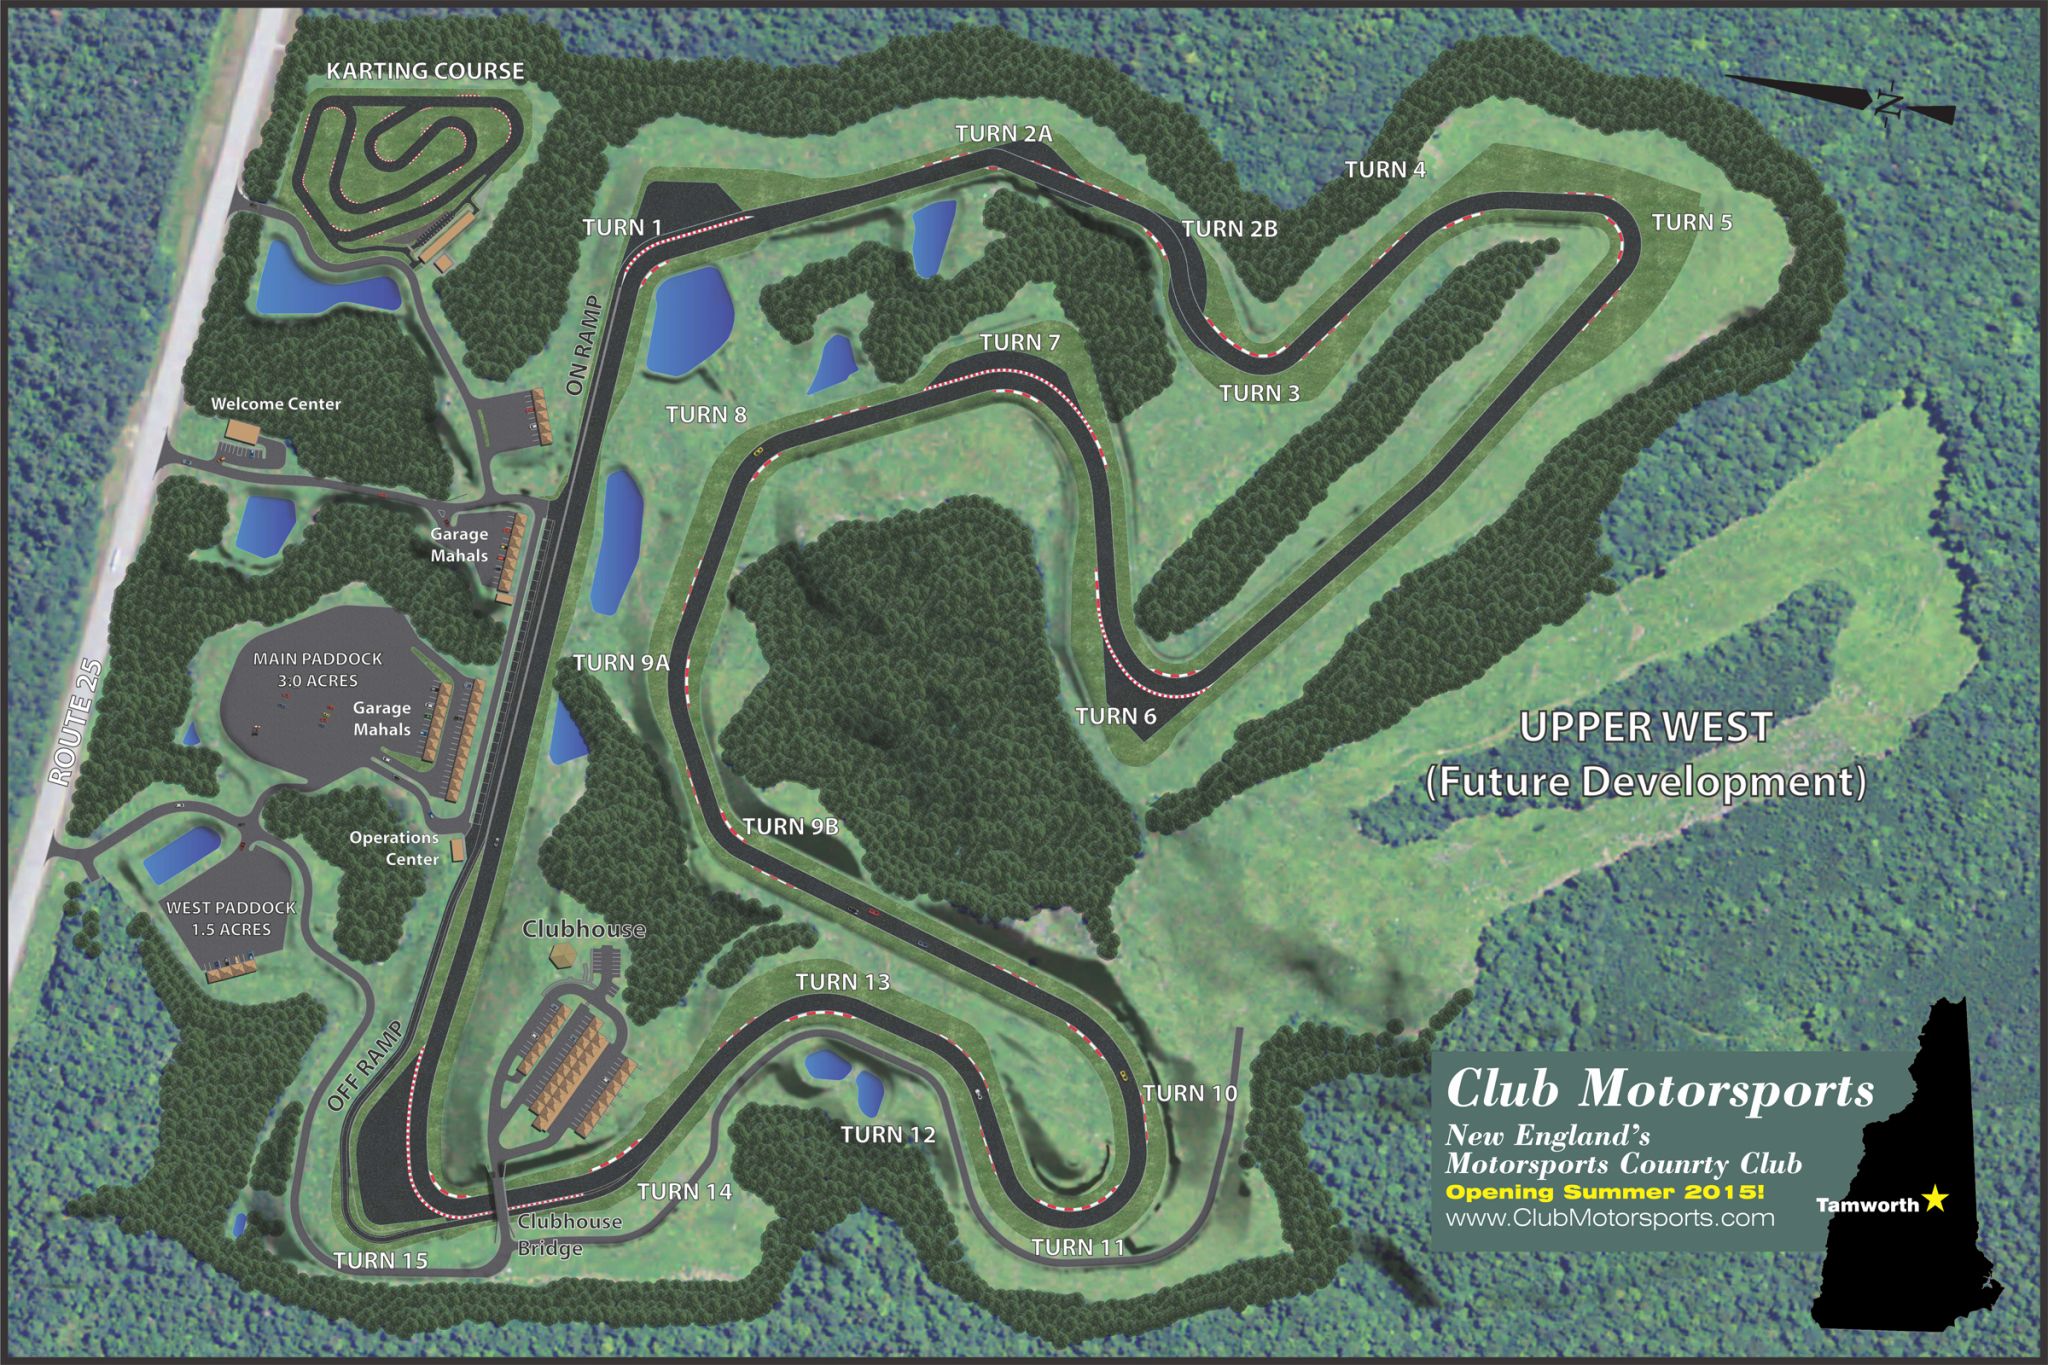 Club Motorsports layout explained